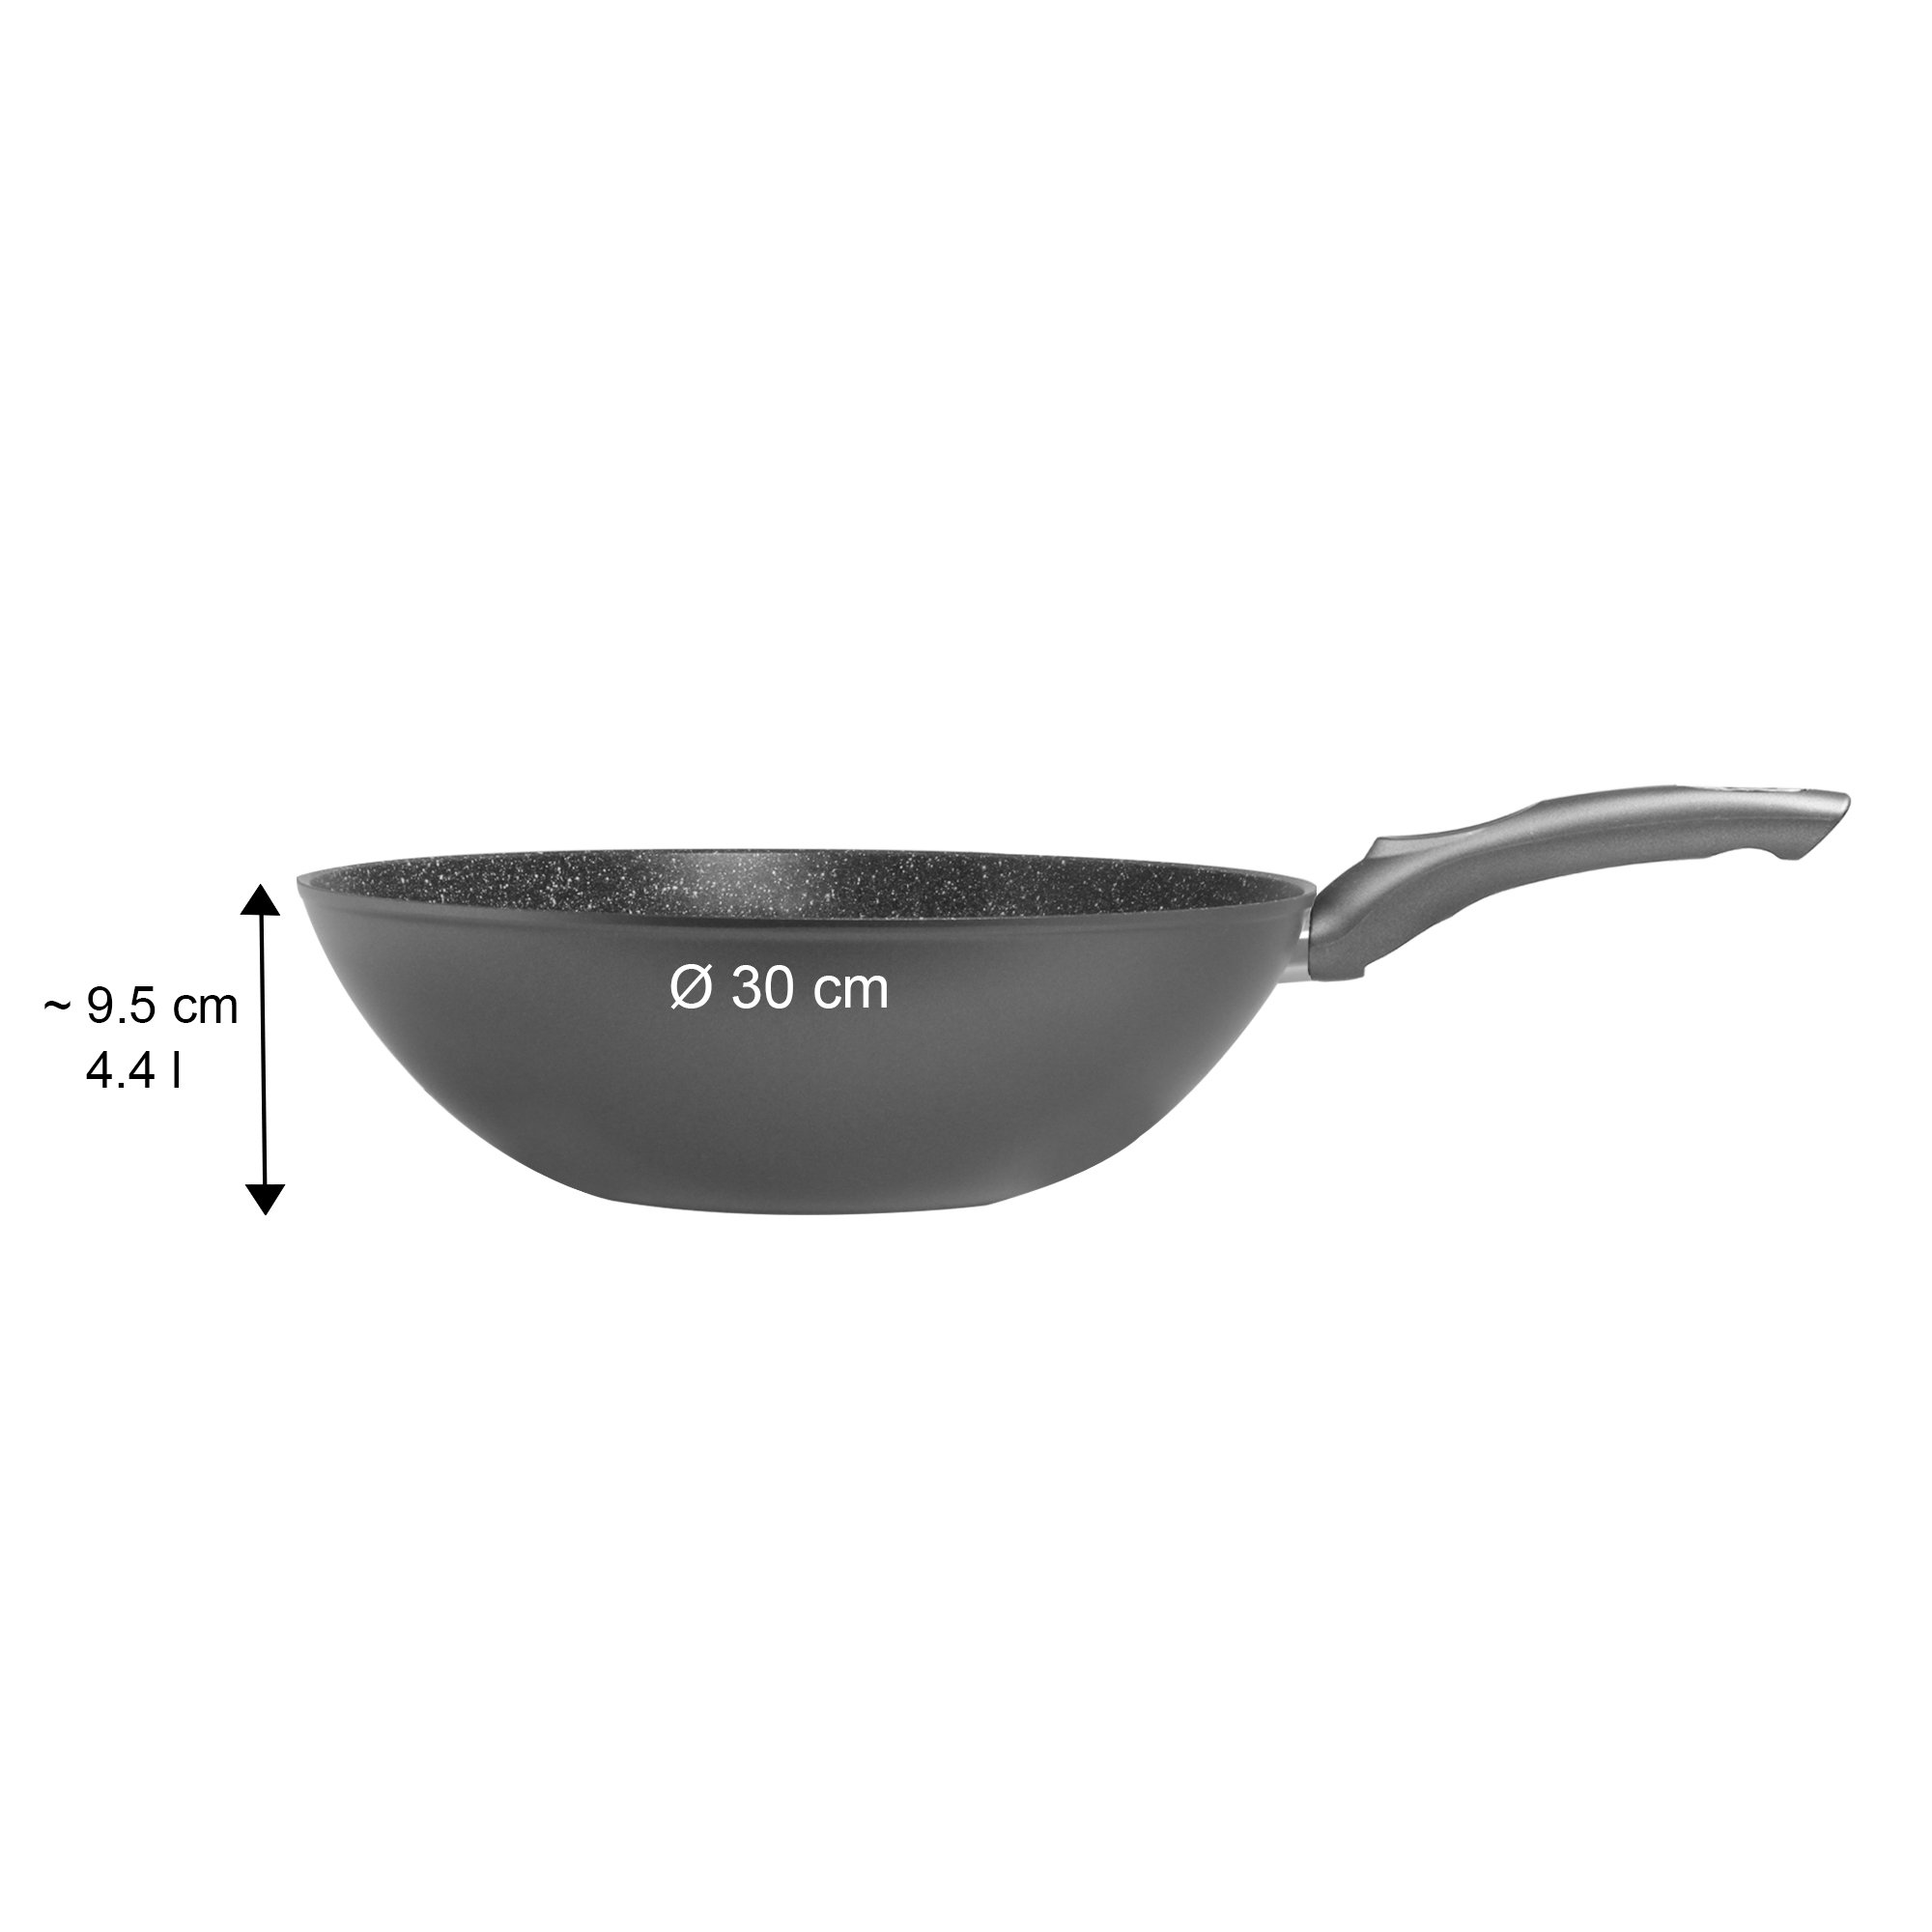 STONELINE® Gourmundo sartén wok 30 cm, Made in Germany, wok con revestimiento antiadherente, apto para inducción